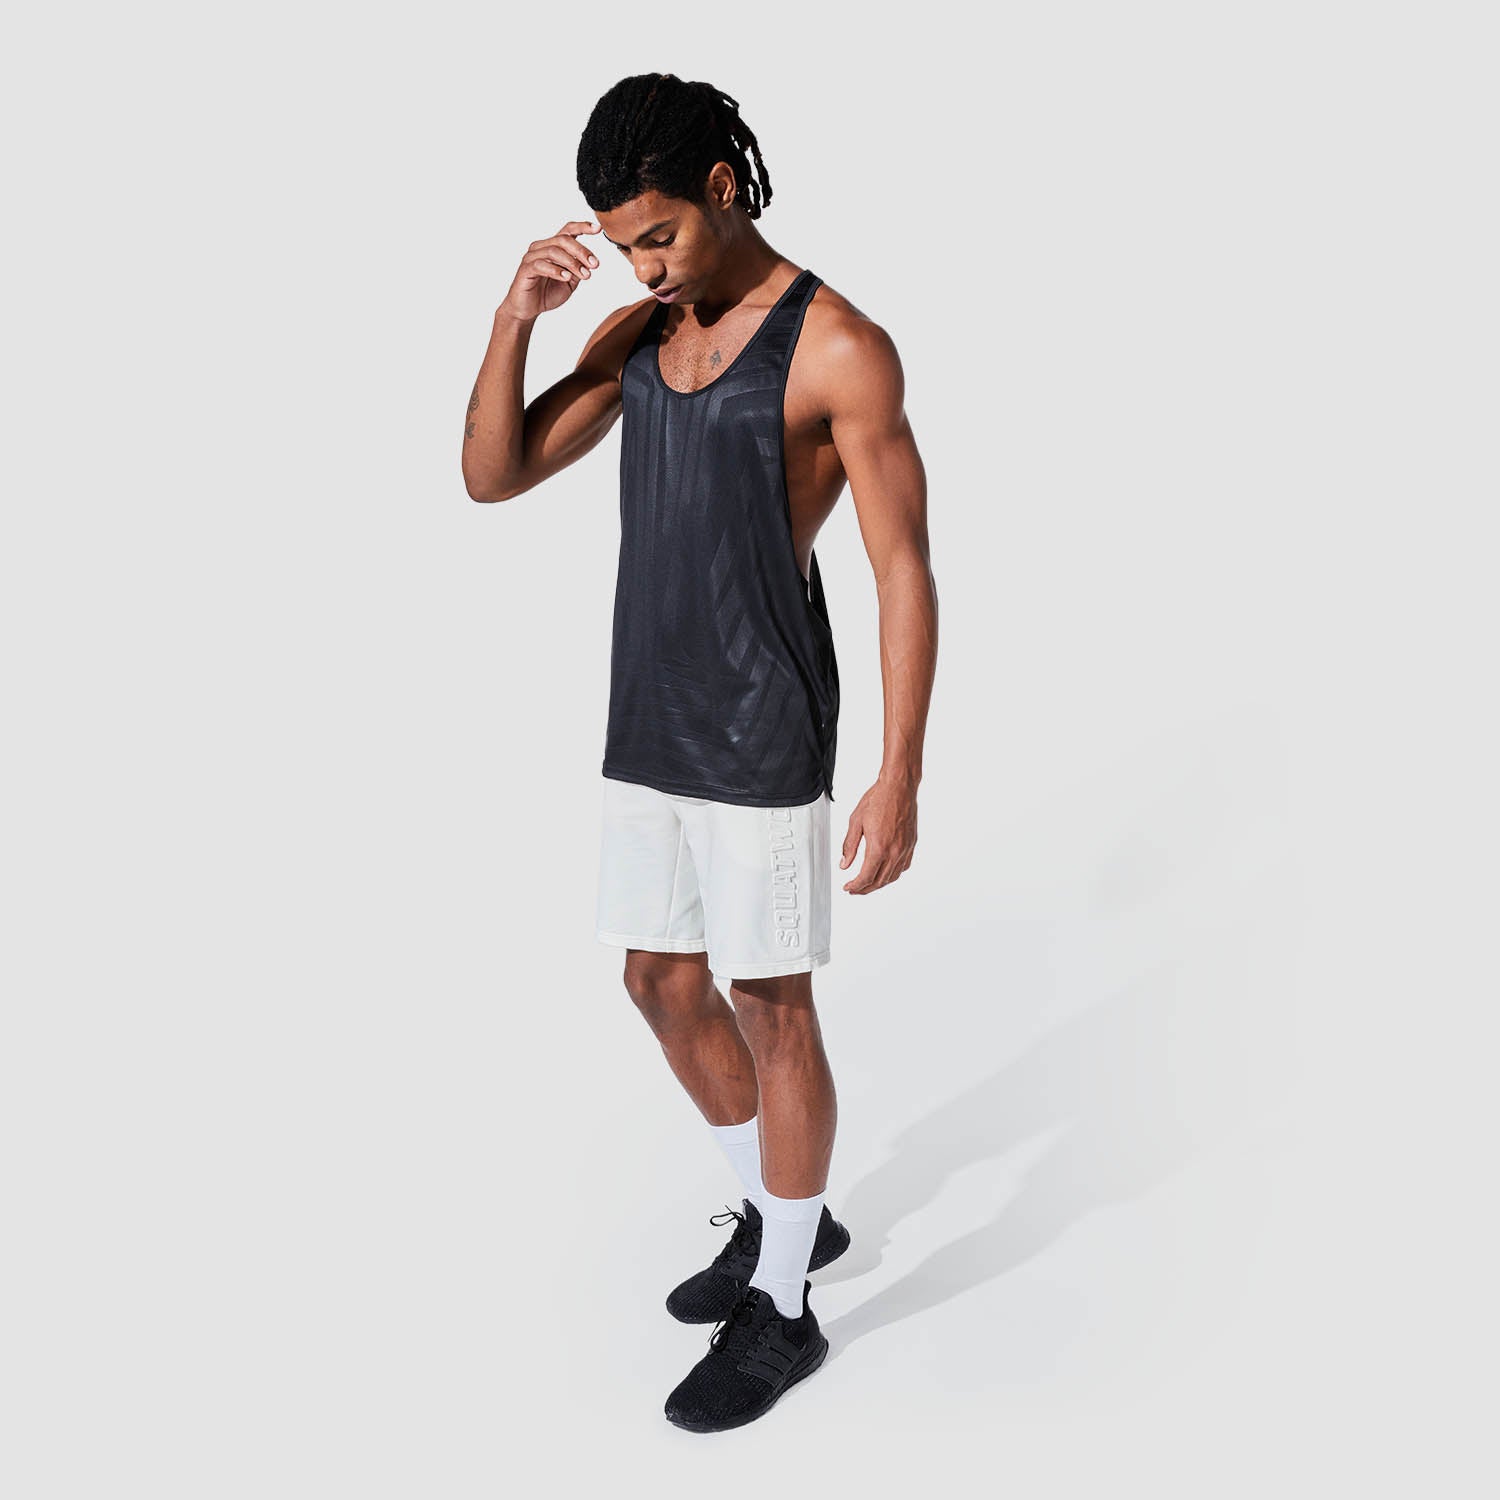 squatwolf-gym-wear-graphic-wave-eyes-stringer-black-workout-stringers-vests-for-men